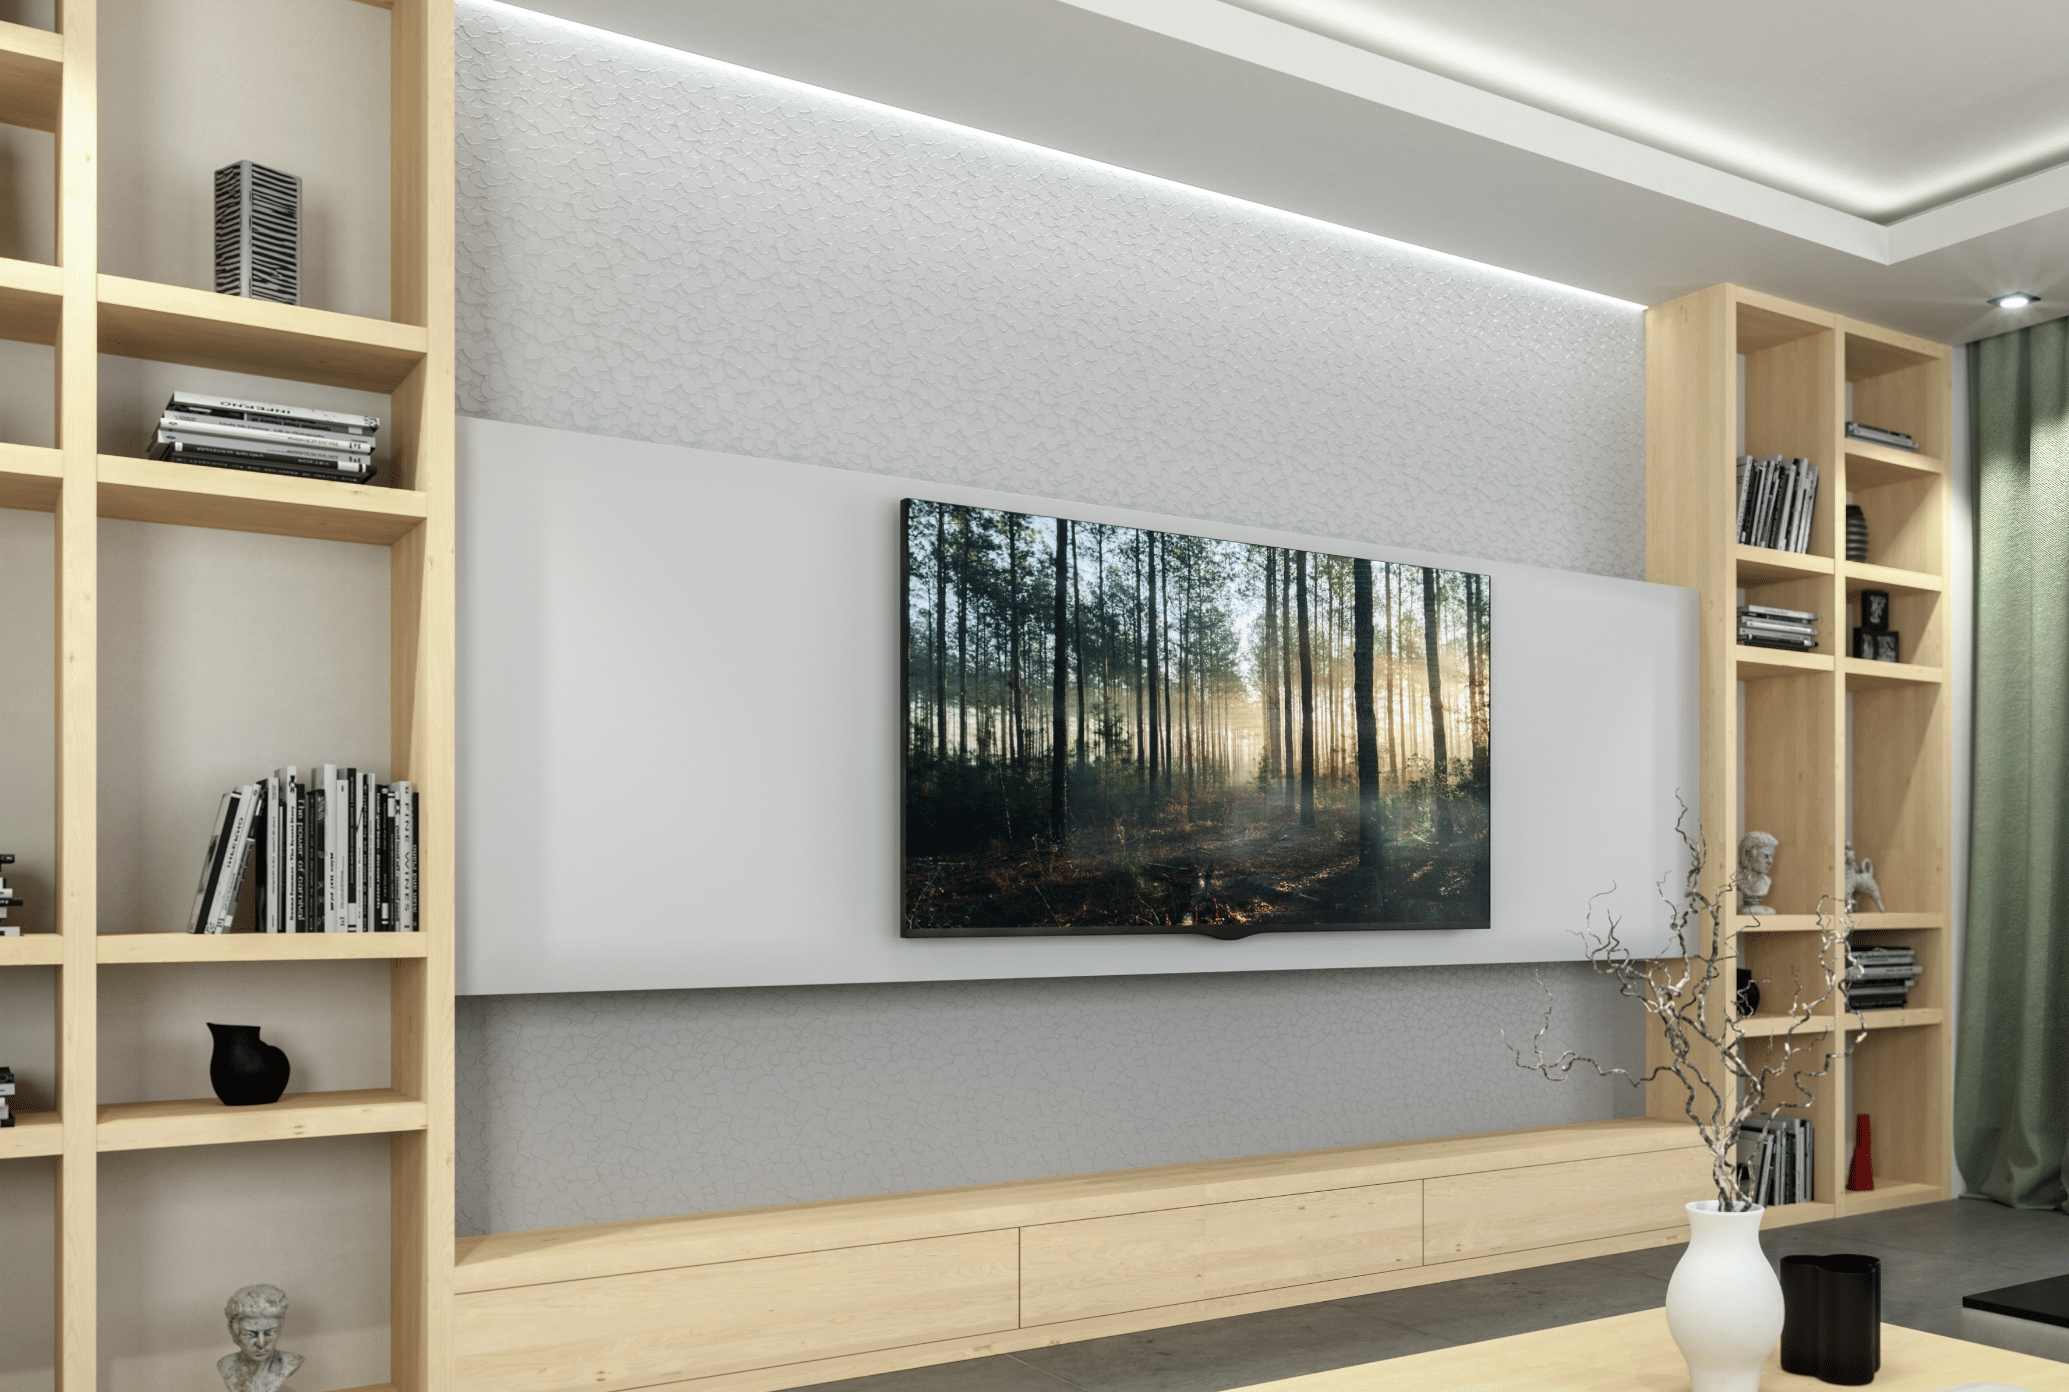 Keplinger zeigt eine Wohnwand aus hellem Holz, mit offenen Regalfächern, einem großem Fernseher und Holzgravur in der Rückwand.